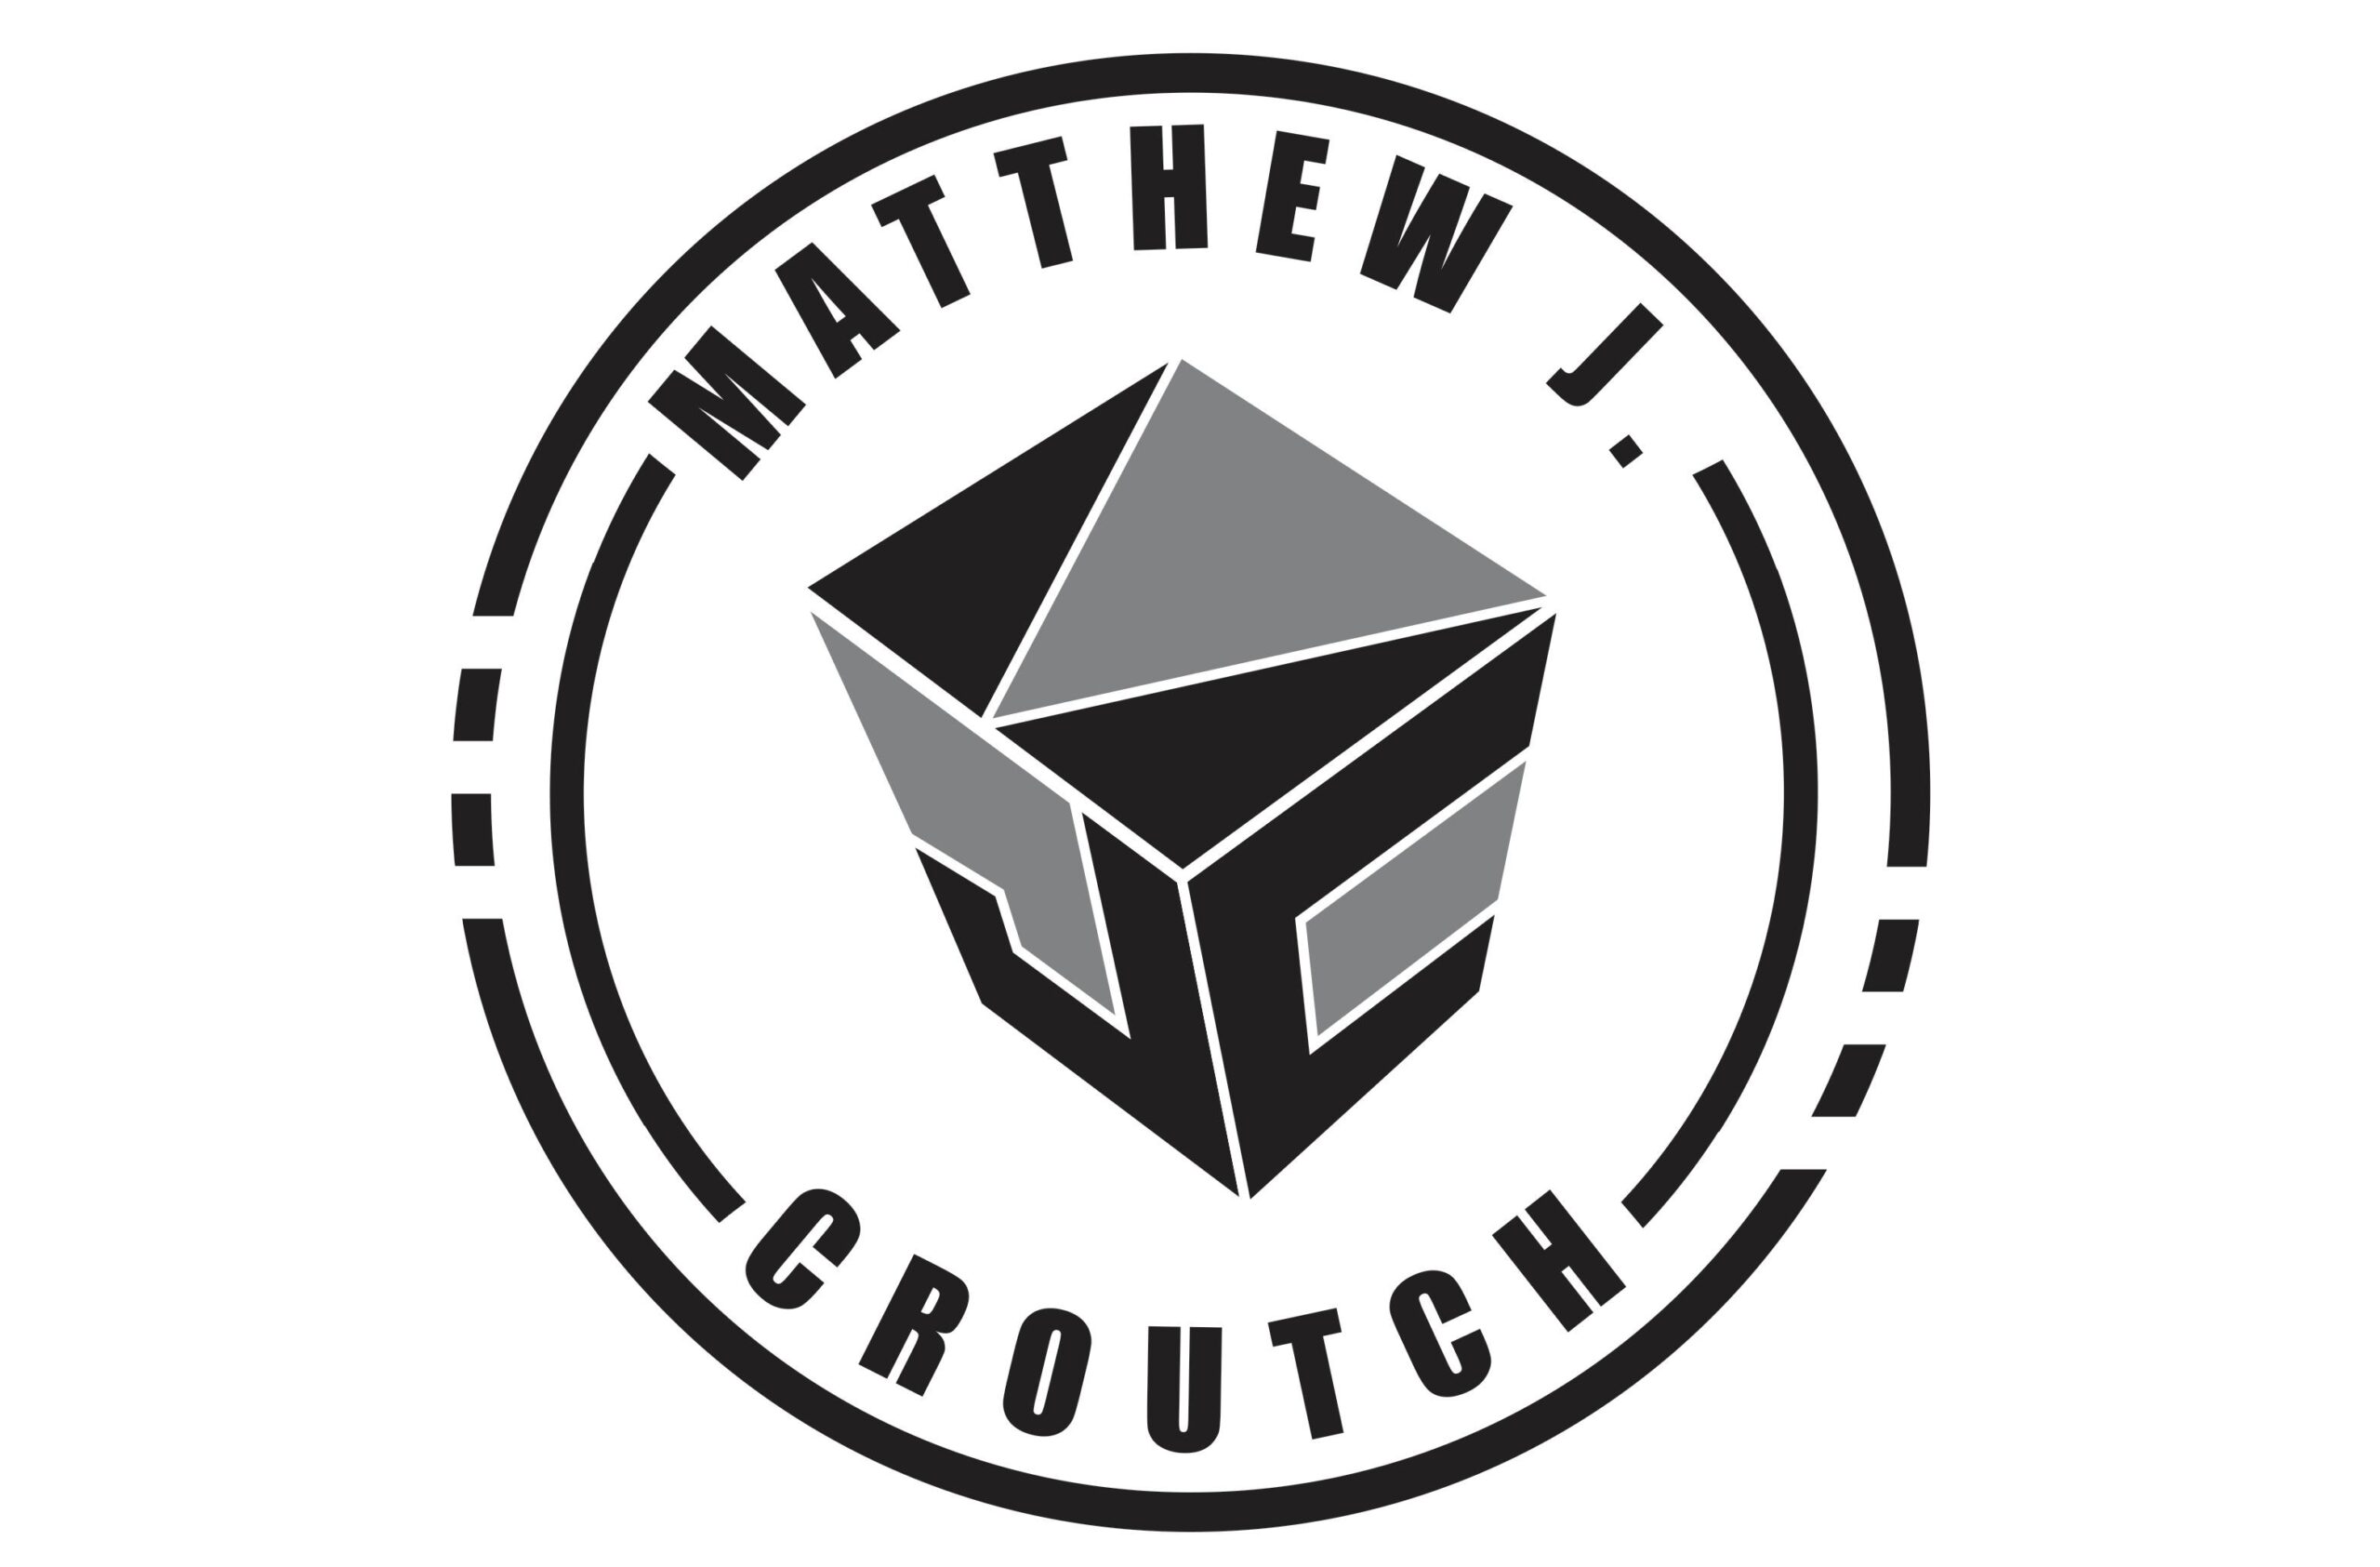 Matthew J. Croutch